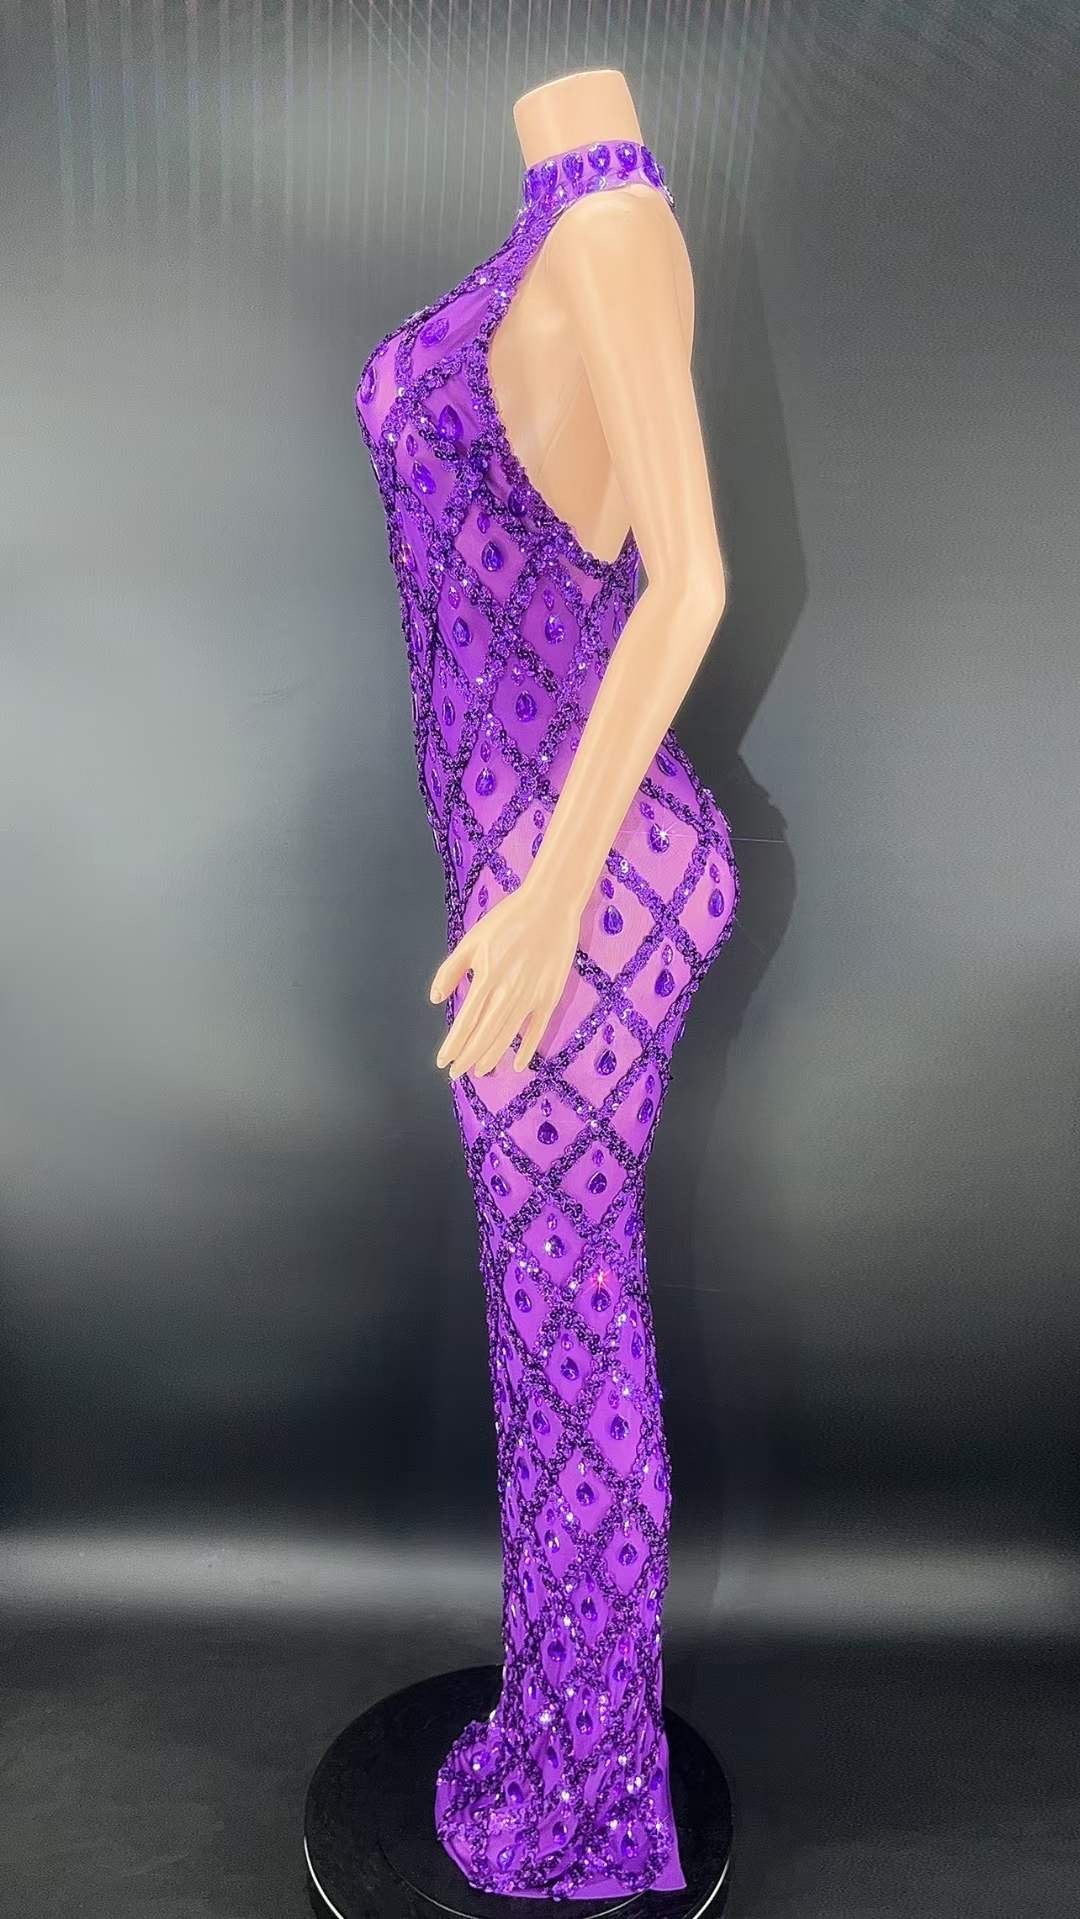 Neil Purple Dress